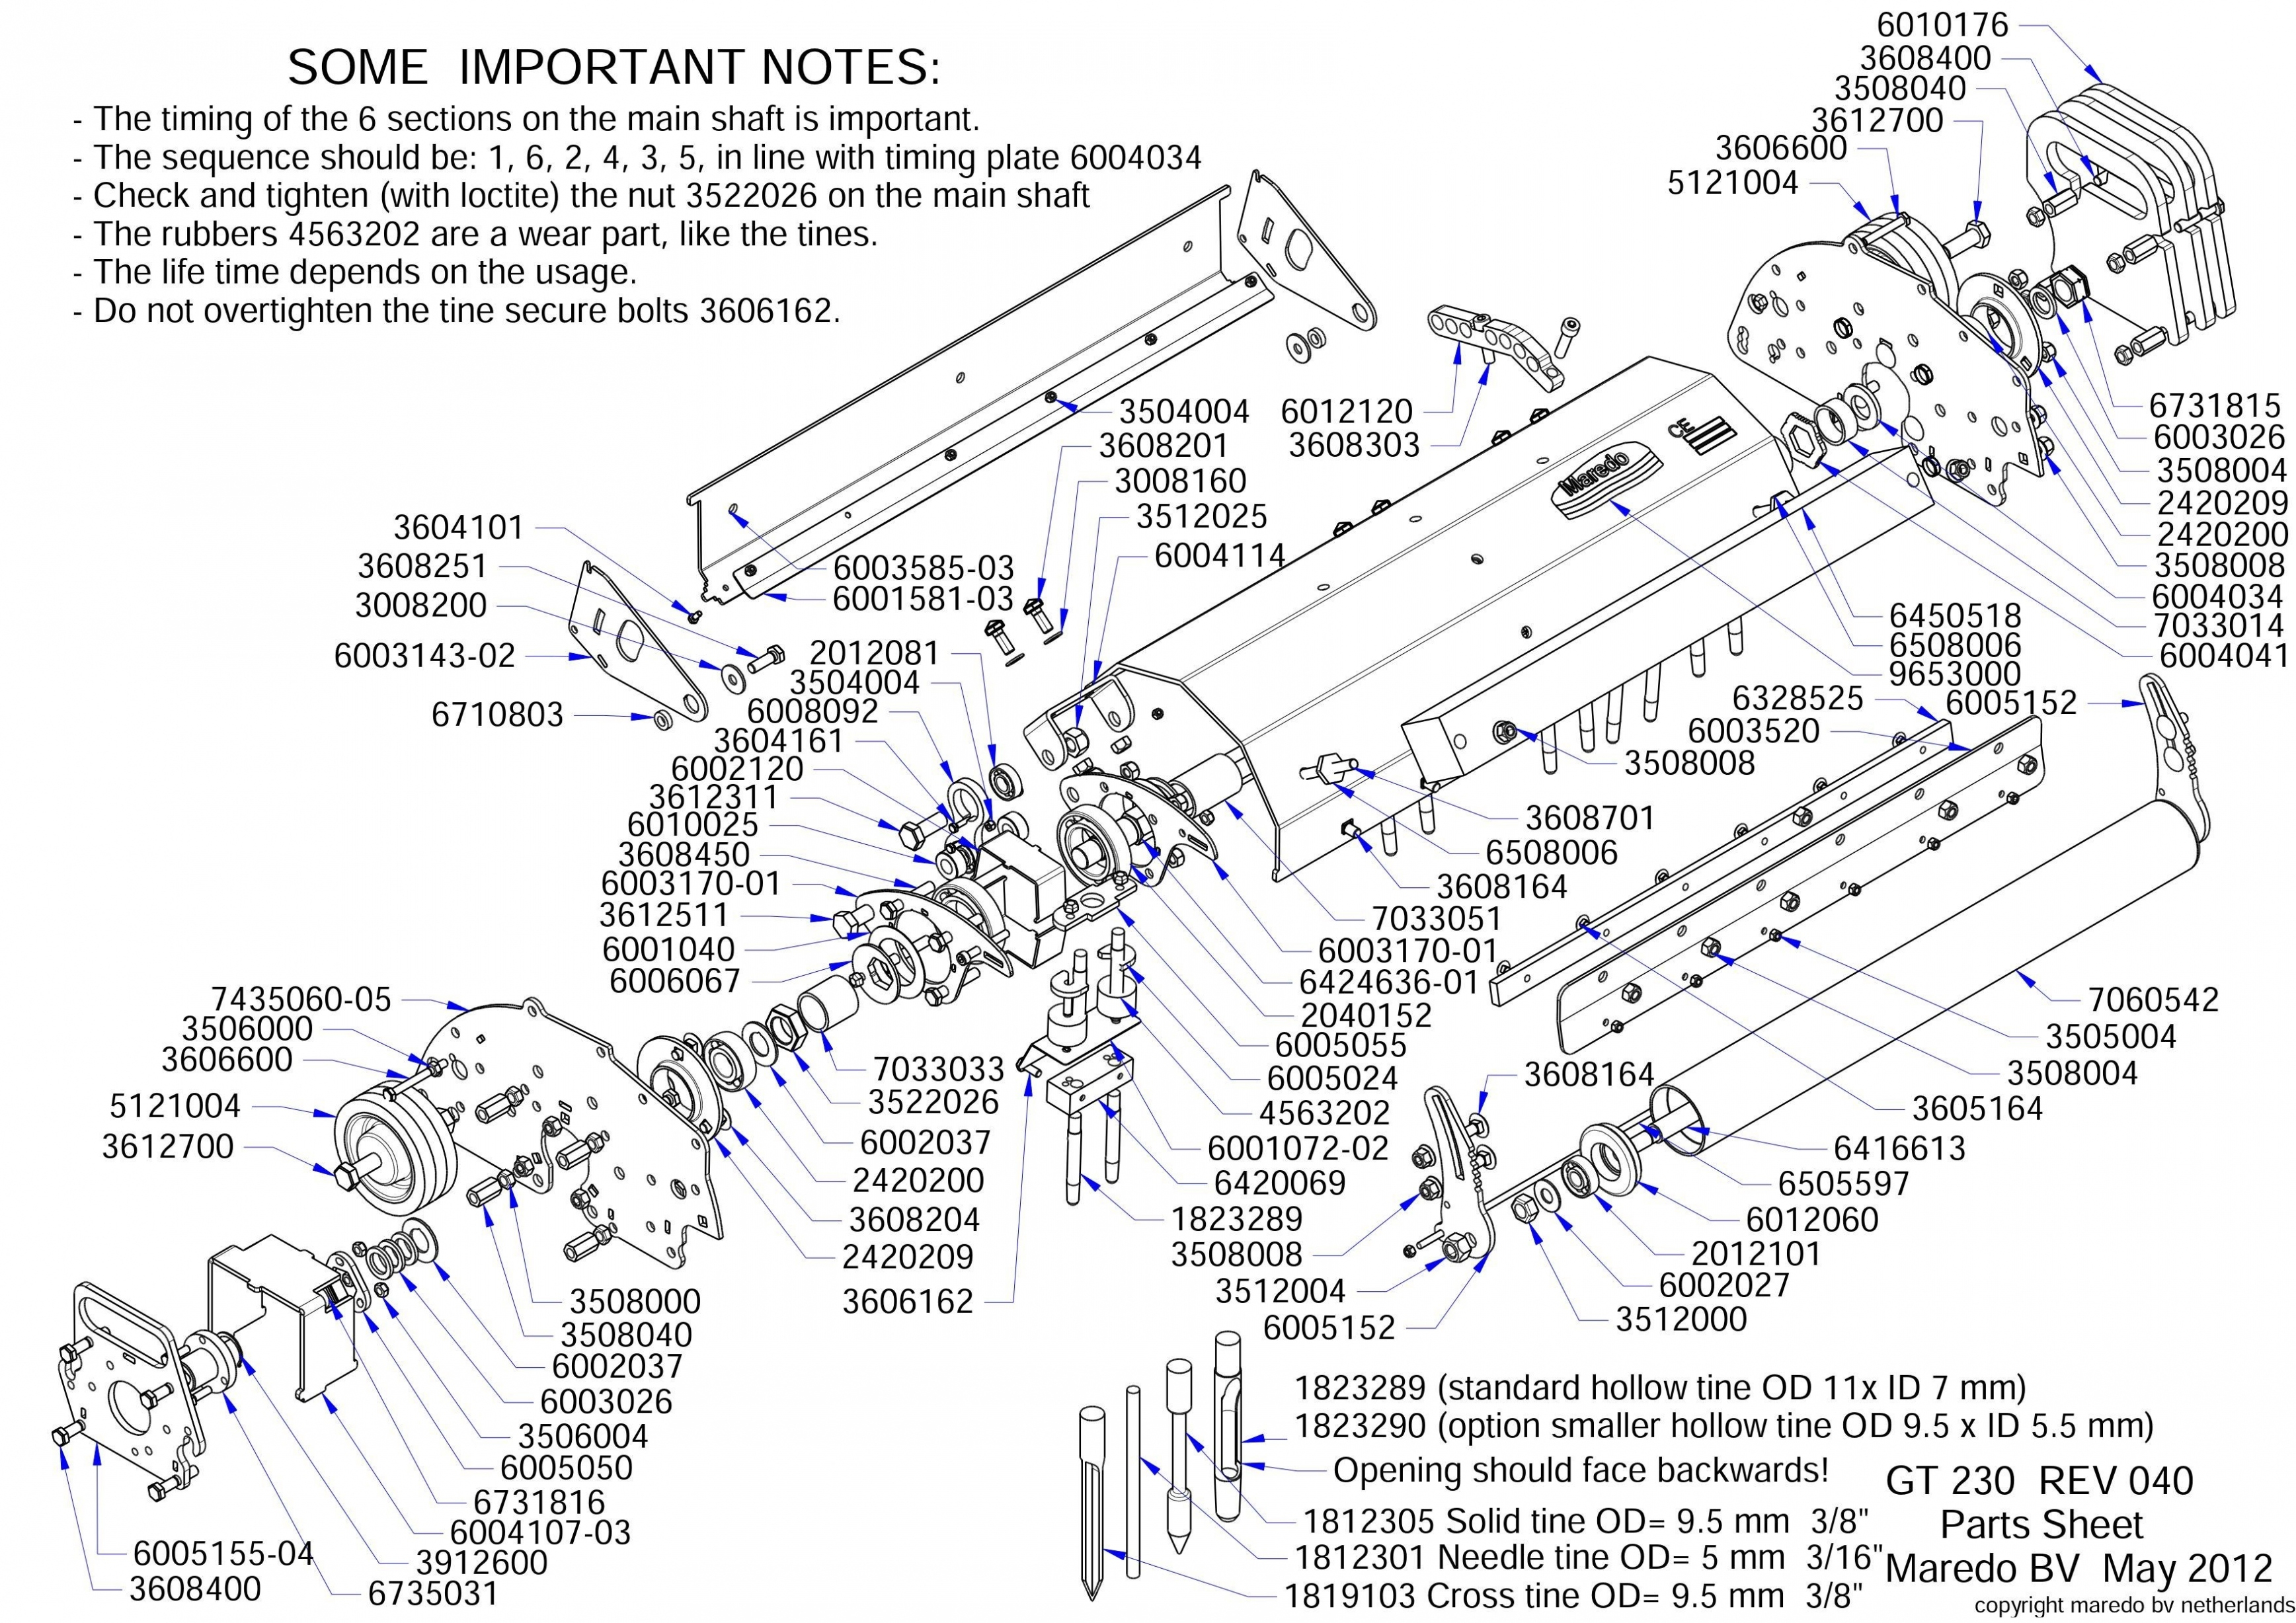 Lt155 John Deere Wiring Diagram | Wiring Diagram - John Deere 318 Wiring Diagram